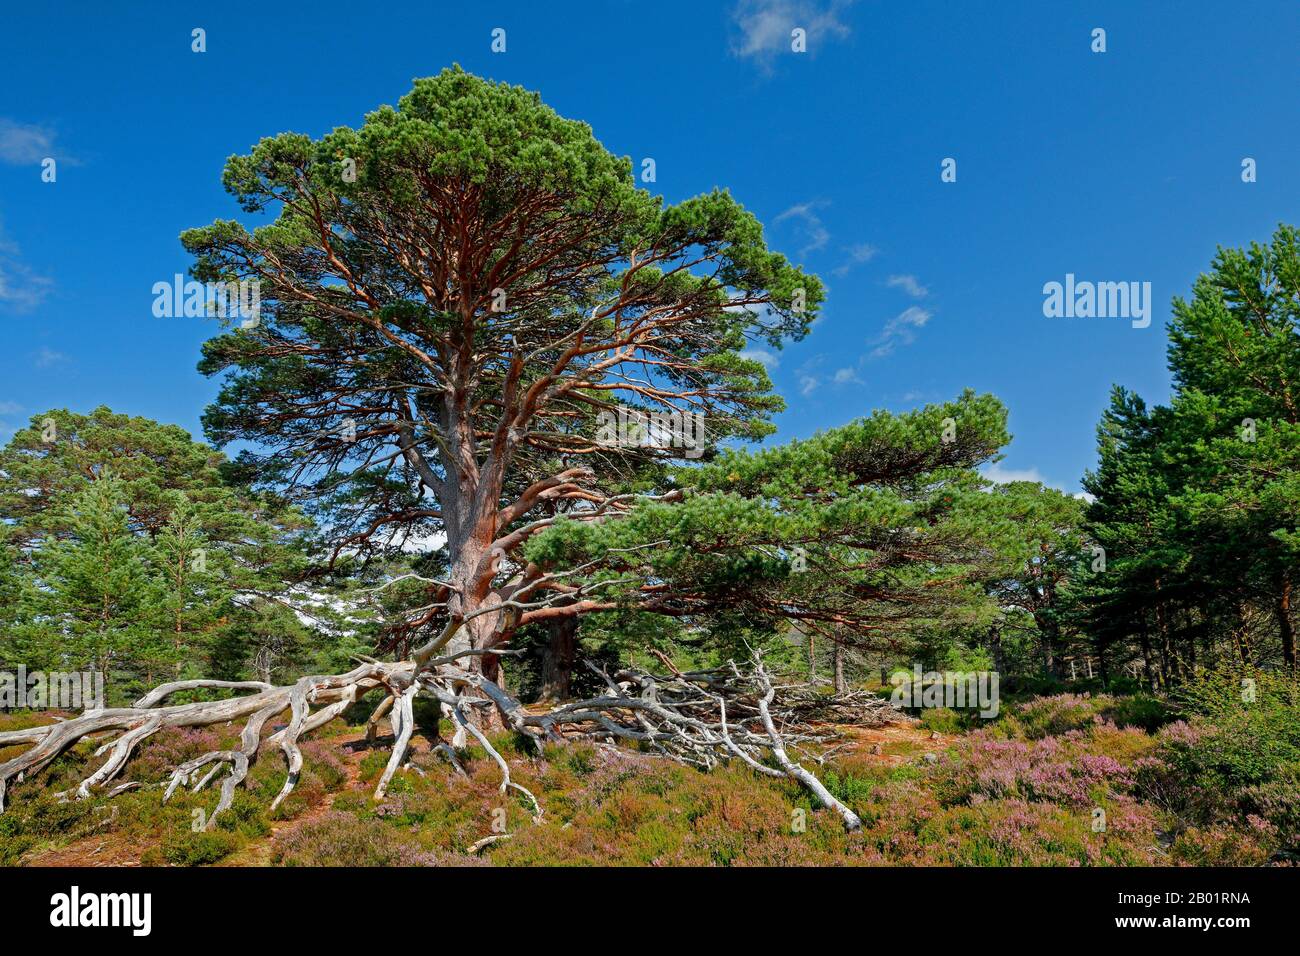 Pino scotch, pino scozzese (Pinus sylvestris), pino vecchio con radici scoperte nel brughiera in fiore, Regno Unito, Scozia, Cairngorms National Park Foto Stock